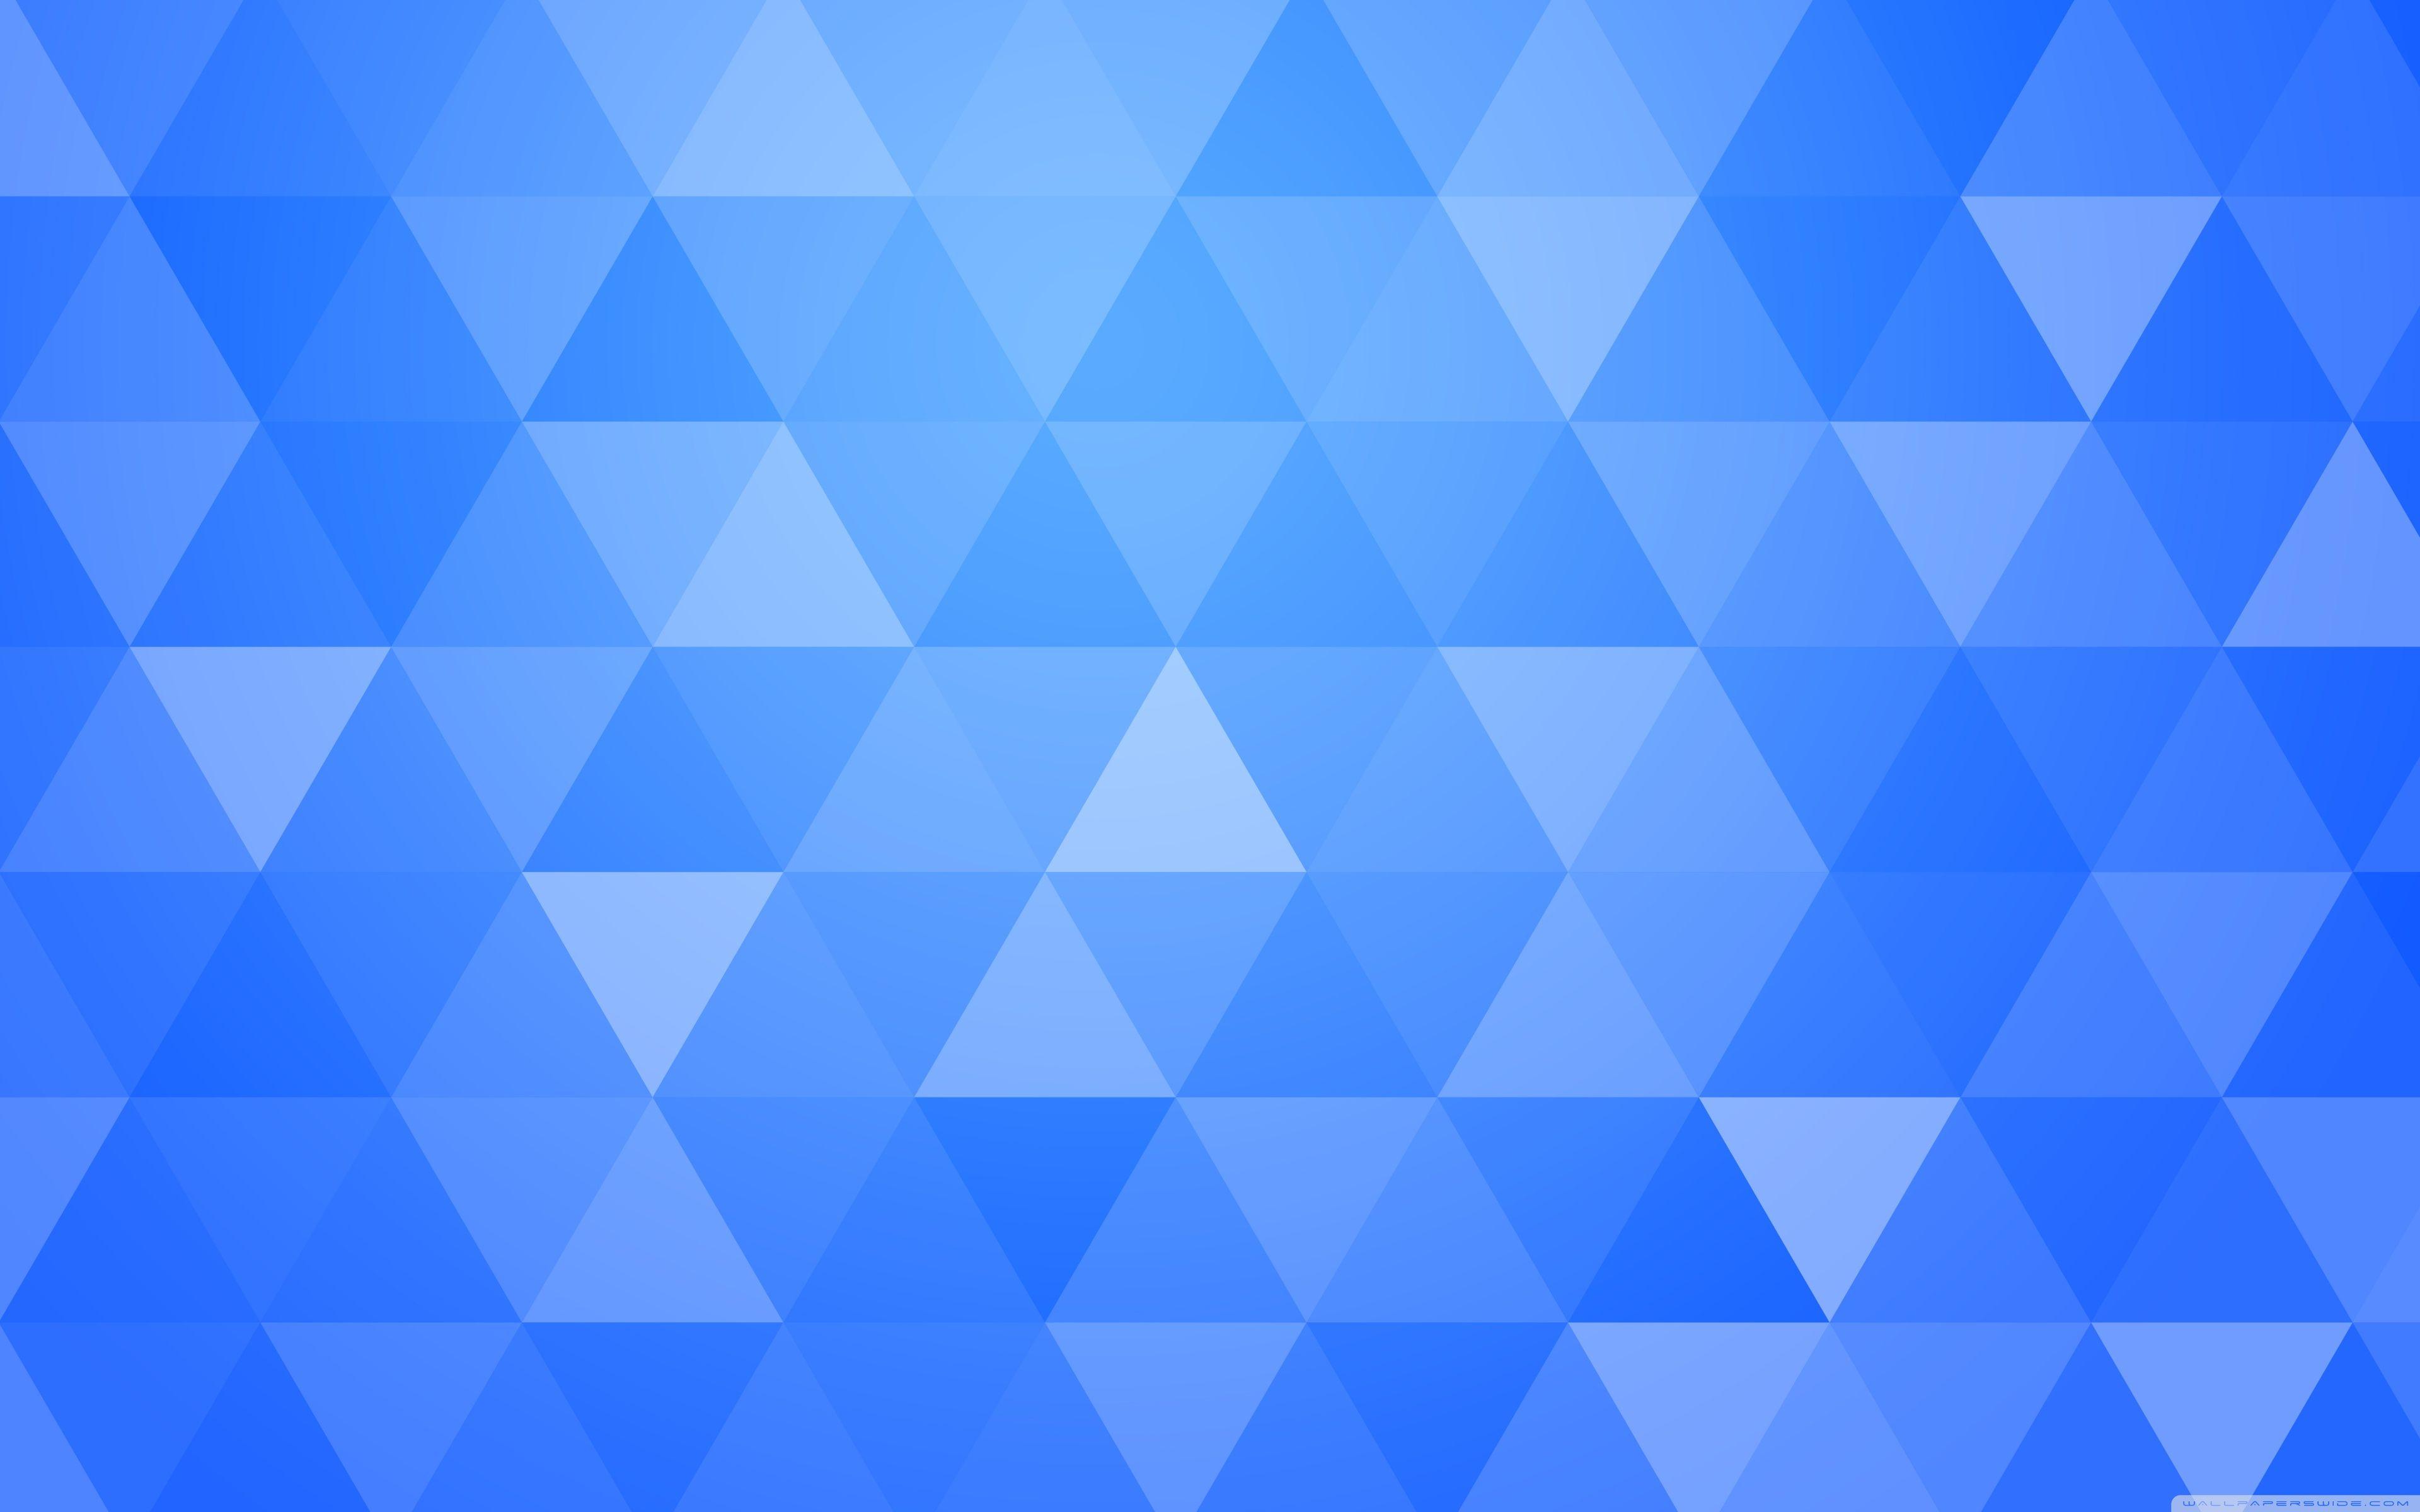 Hình nền tam giác xanh đẹp nhất: Nếu bạn đang tìm kiếm một bộ bố sựu tập hình nền tam giác xanh đẹp nhất, chúng tôi là lựa chọn hoàn hảo cho bạn. Với những tác phẩm nghệ thuật đẹp mắt và độc đáo, bạn sẽ chắc chắn tìm thấy một bức ảnh nền tam giác xanh để phù hợp với sở thích của mình. Hãy truy cập ngay và tải về những hình ảnh tuyệt đẹp này để đổi mới màn hình của bạn.